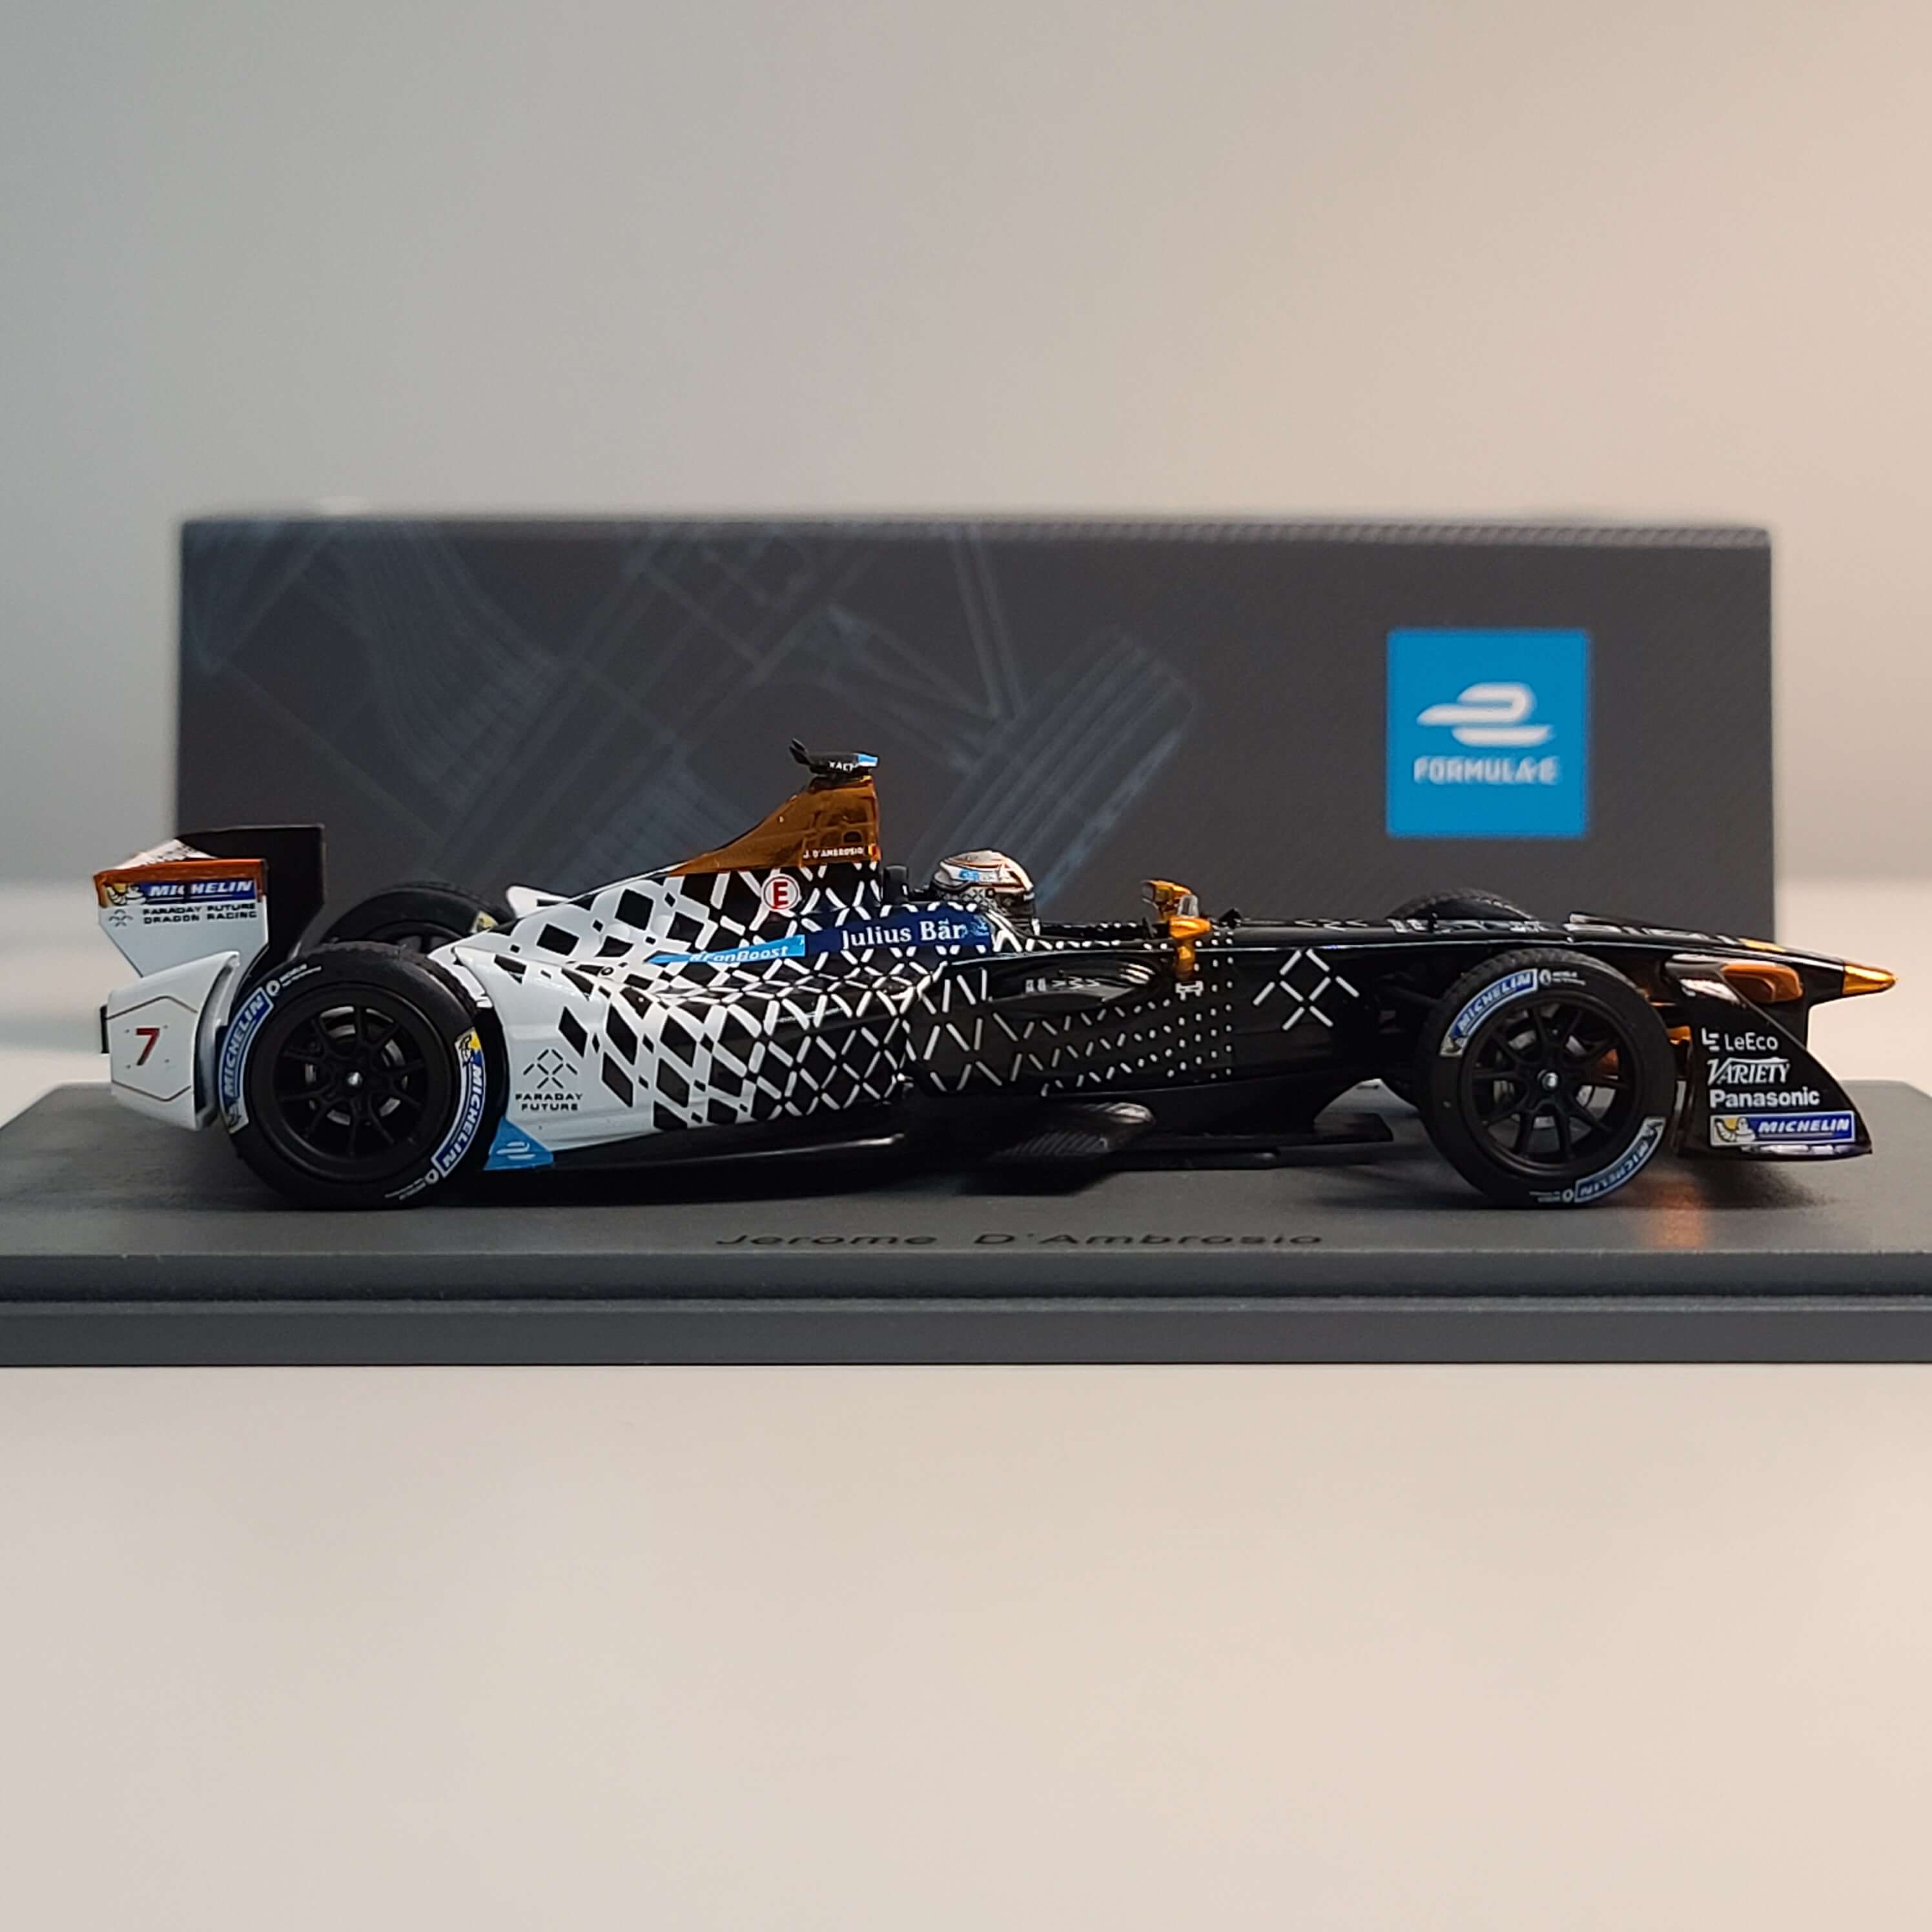 Spark 1:43 法拉第未来 FE 电动方程式赛车 龙之队 赛车收藏模型